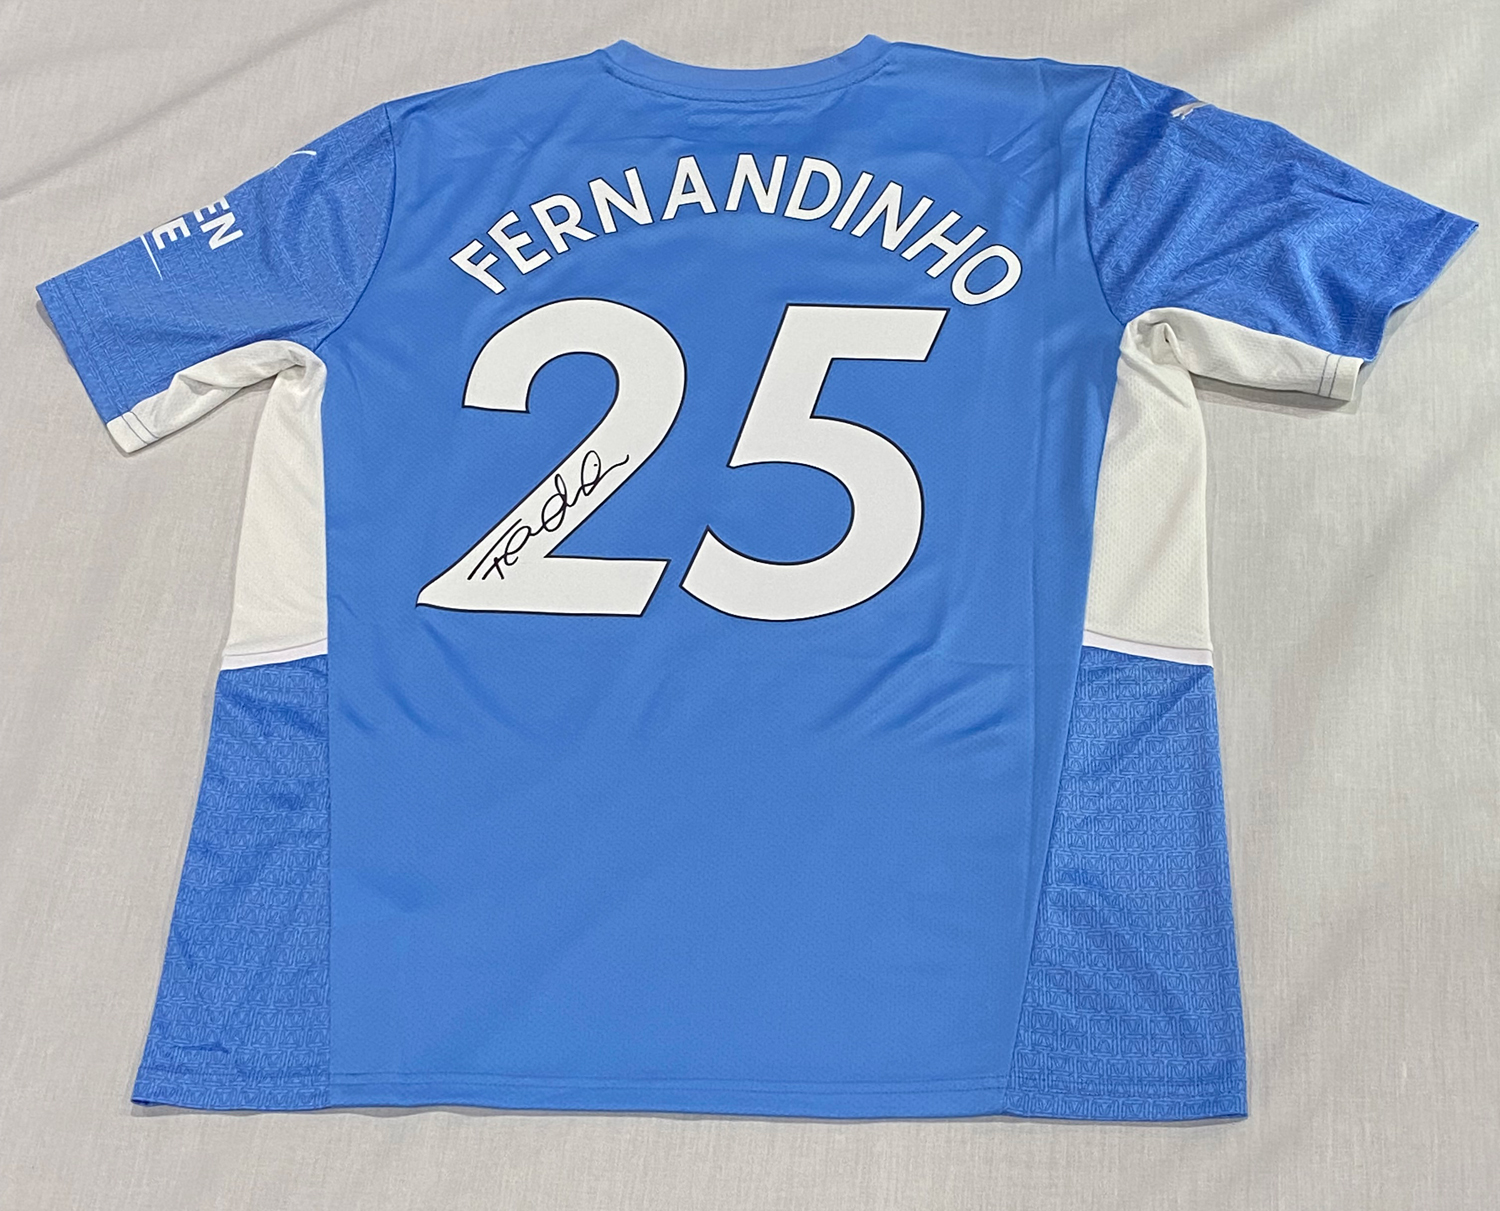 FERNANDINHO - 2017/18 Champions League. - Manchester City FC